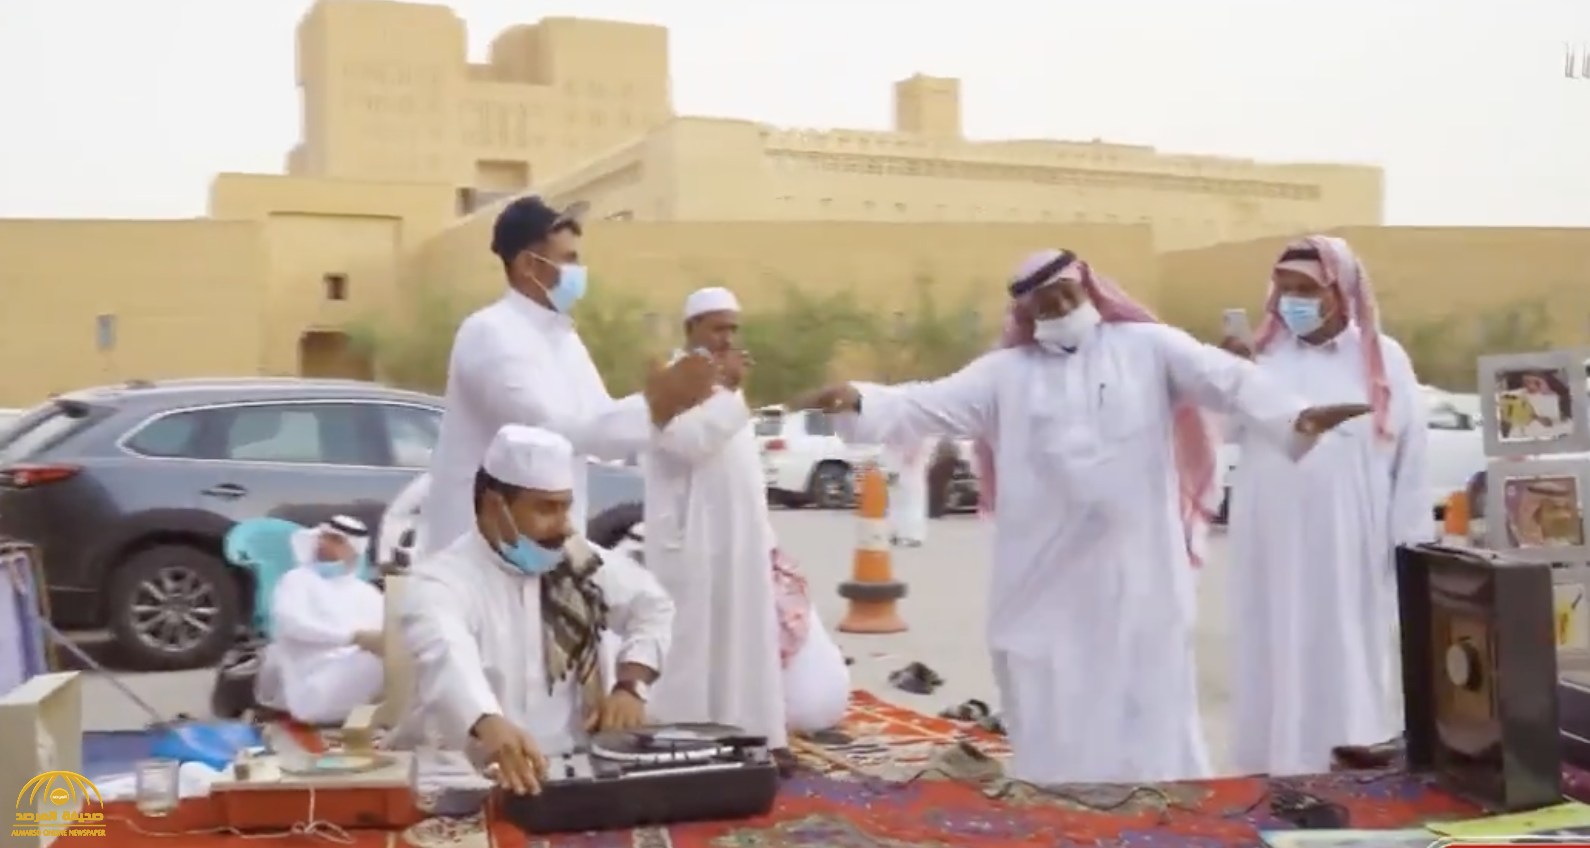 تعود بك 50 عامًا إلى الوراء.. شاهد: جولة داخل "سوق الزل" القديم في الرياض بعد تحوله إلى مزار سياحي